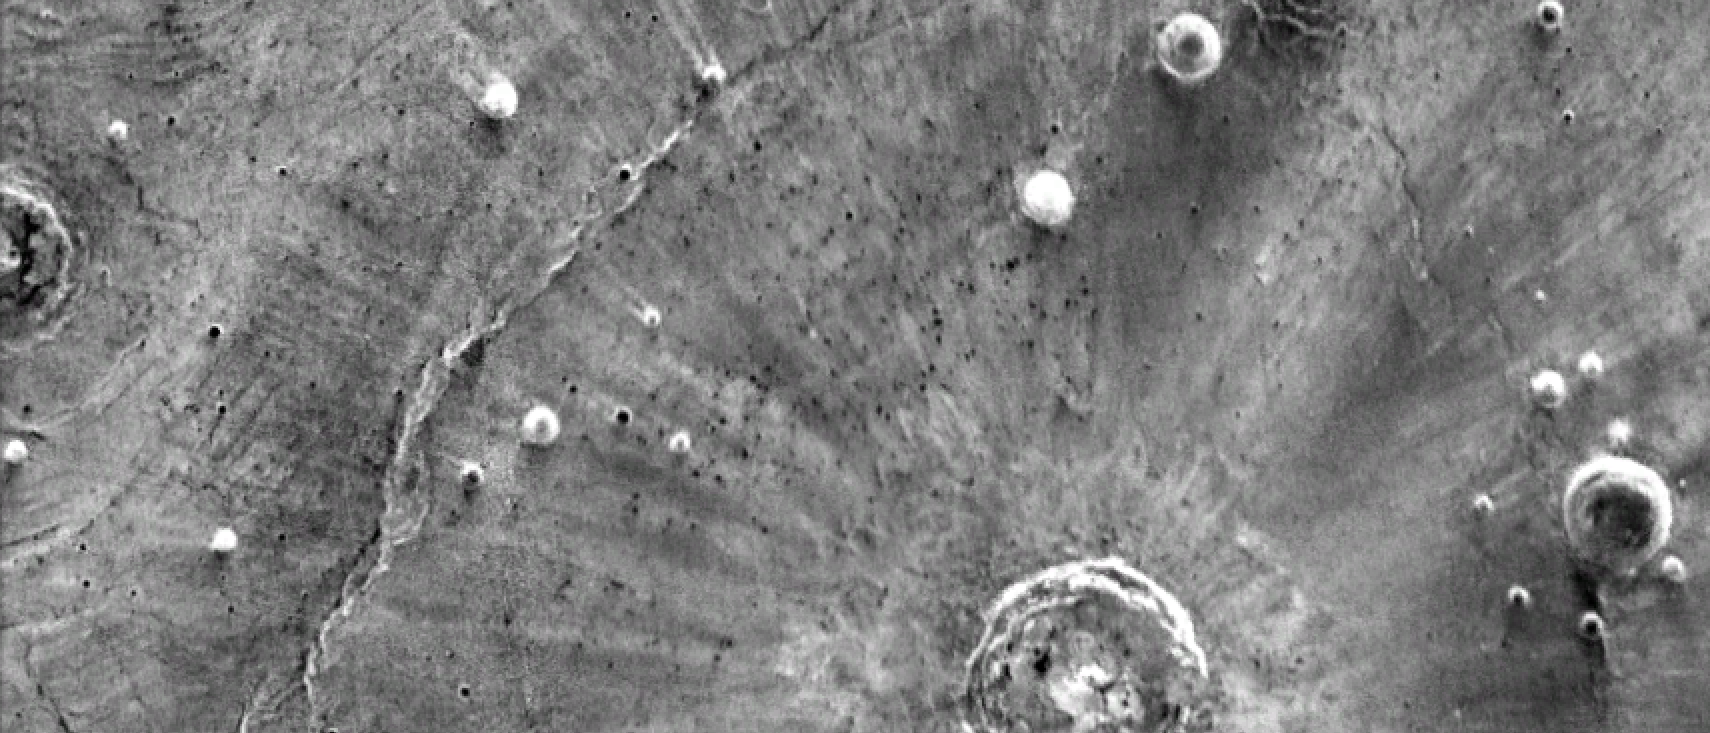 Infrarotaufnahme von der Oberfläche des Mars mit hellen Streifen, die paarweise vom Einschlagort wegzeigen